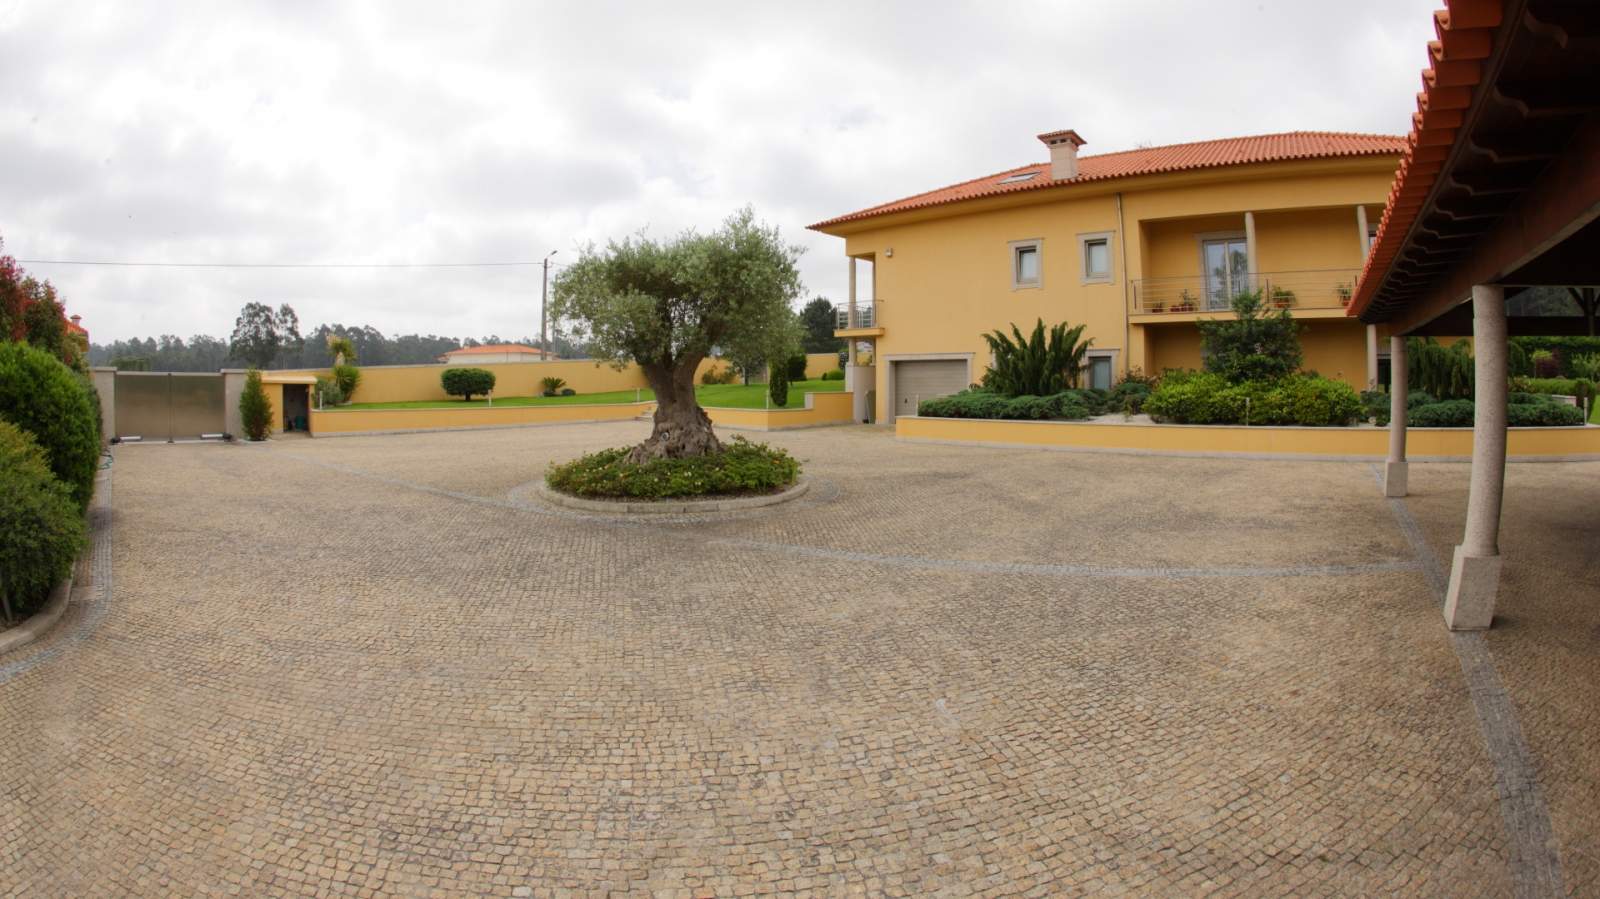 Villa mit Pool und Garten, zu verkaufen, in Póvoa de Varzim, Portugal_22669